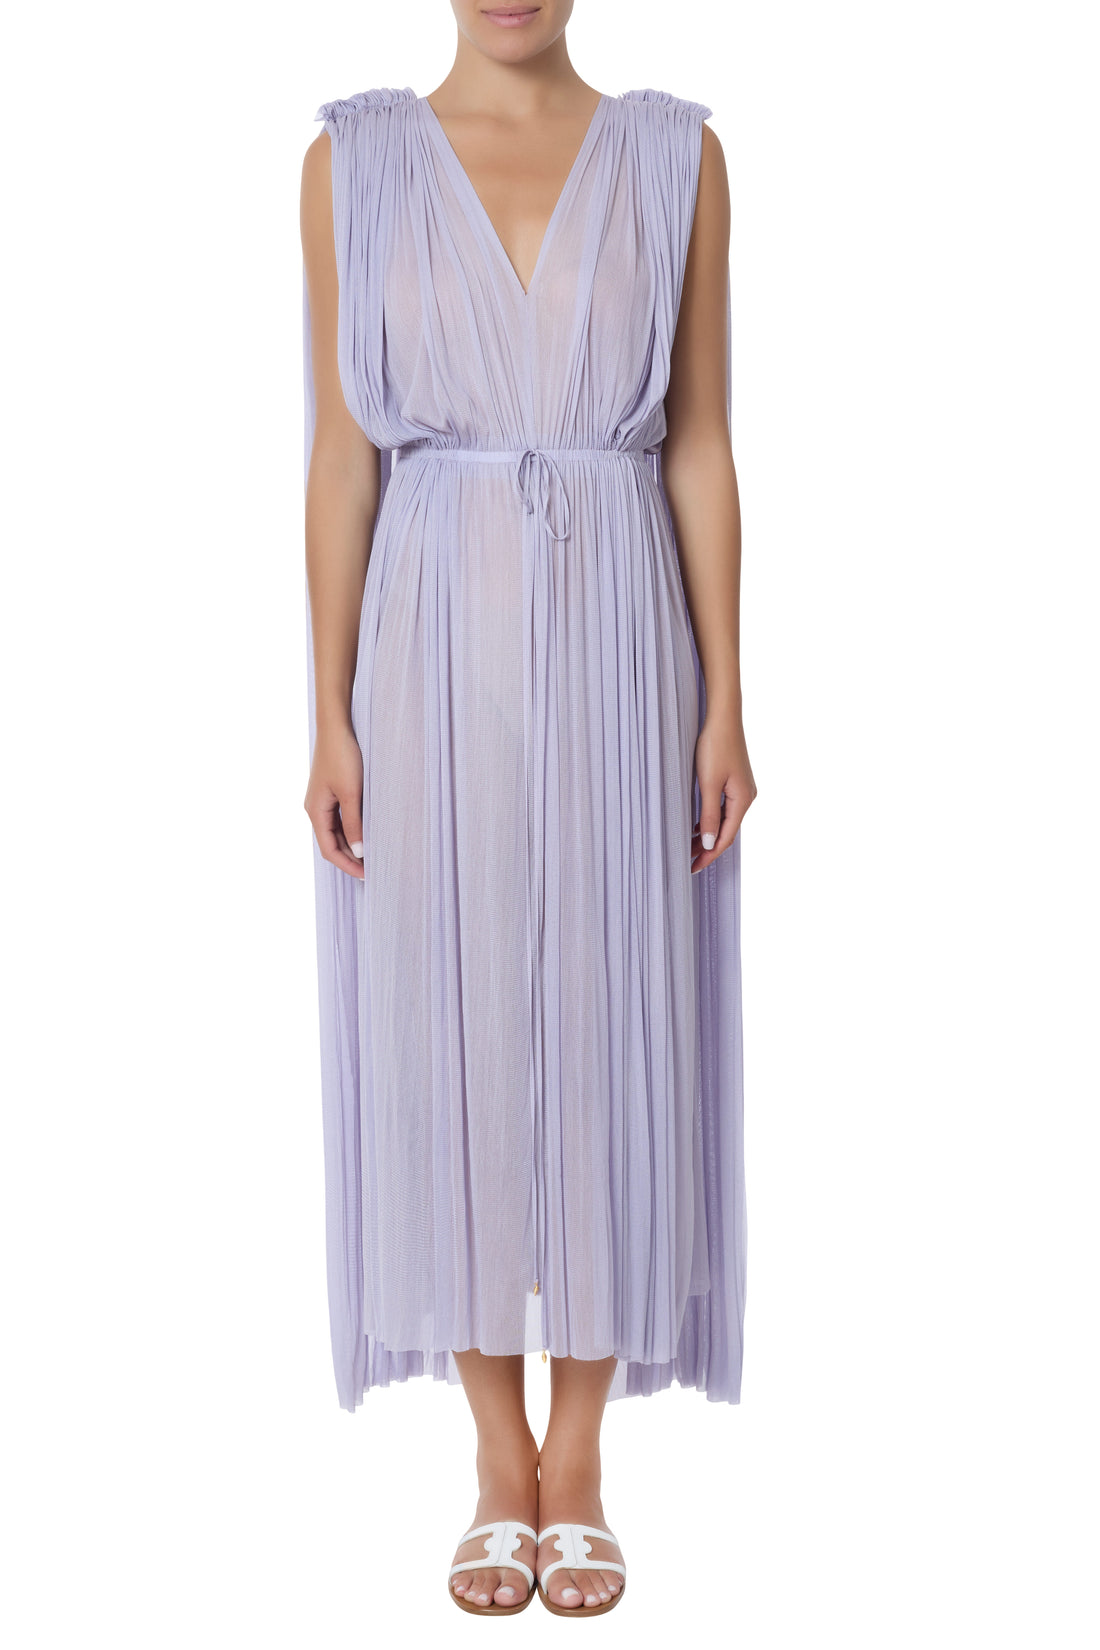 Cymone lilac dress